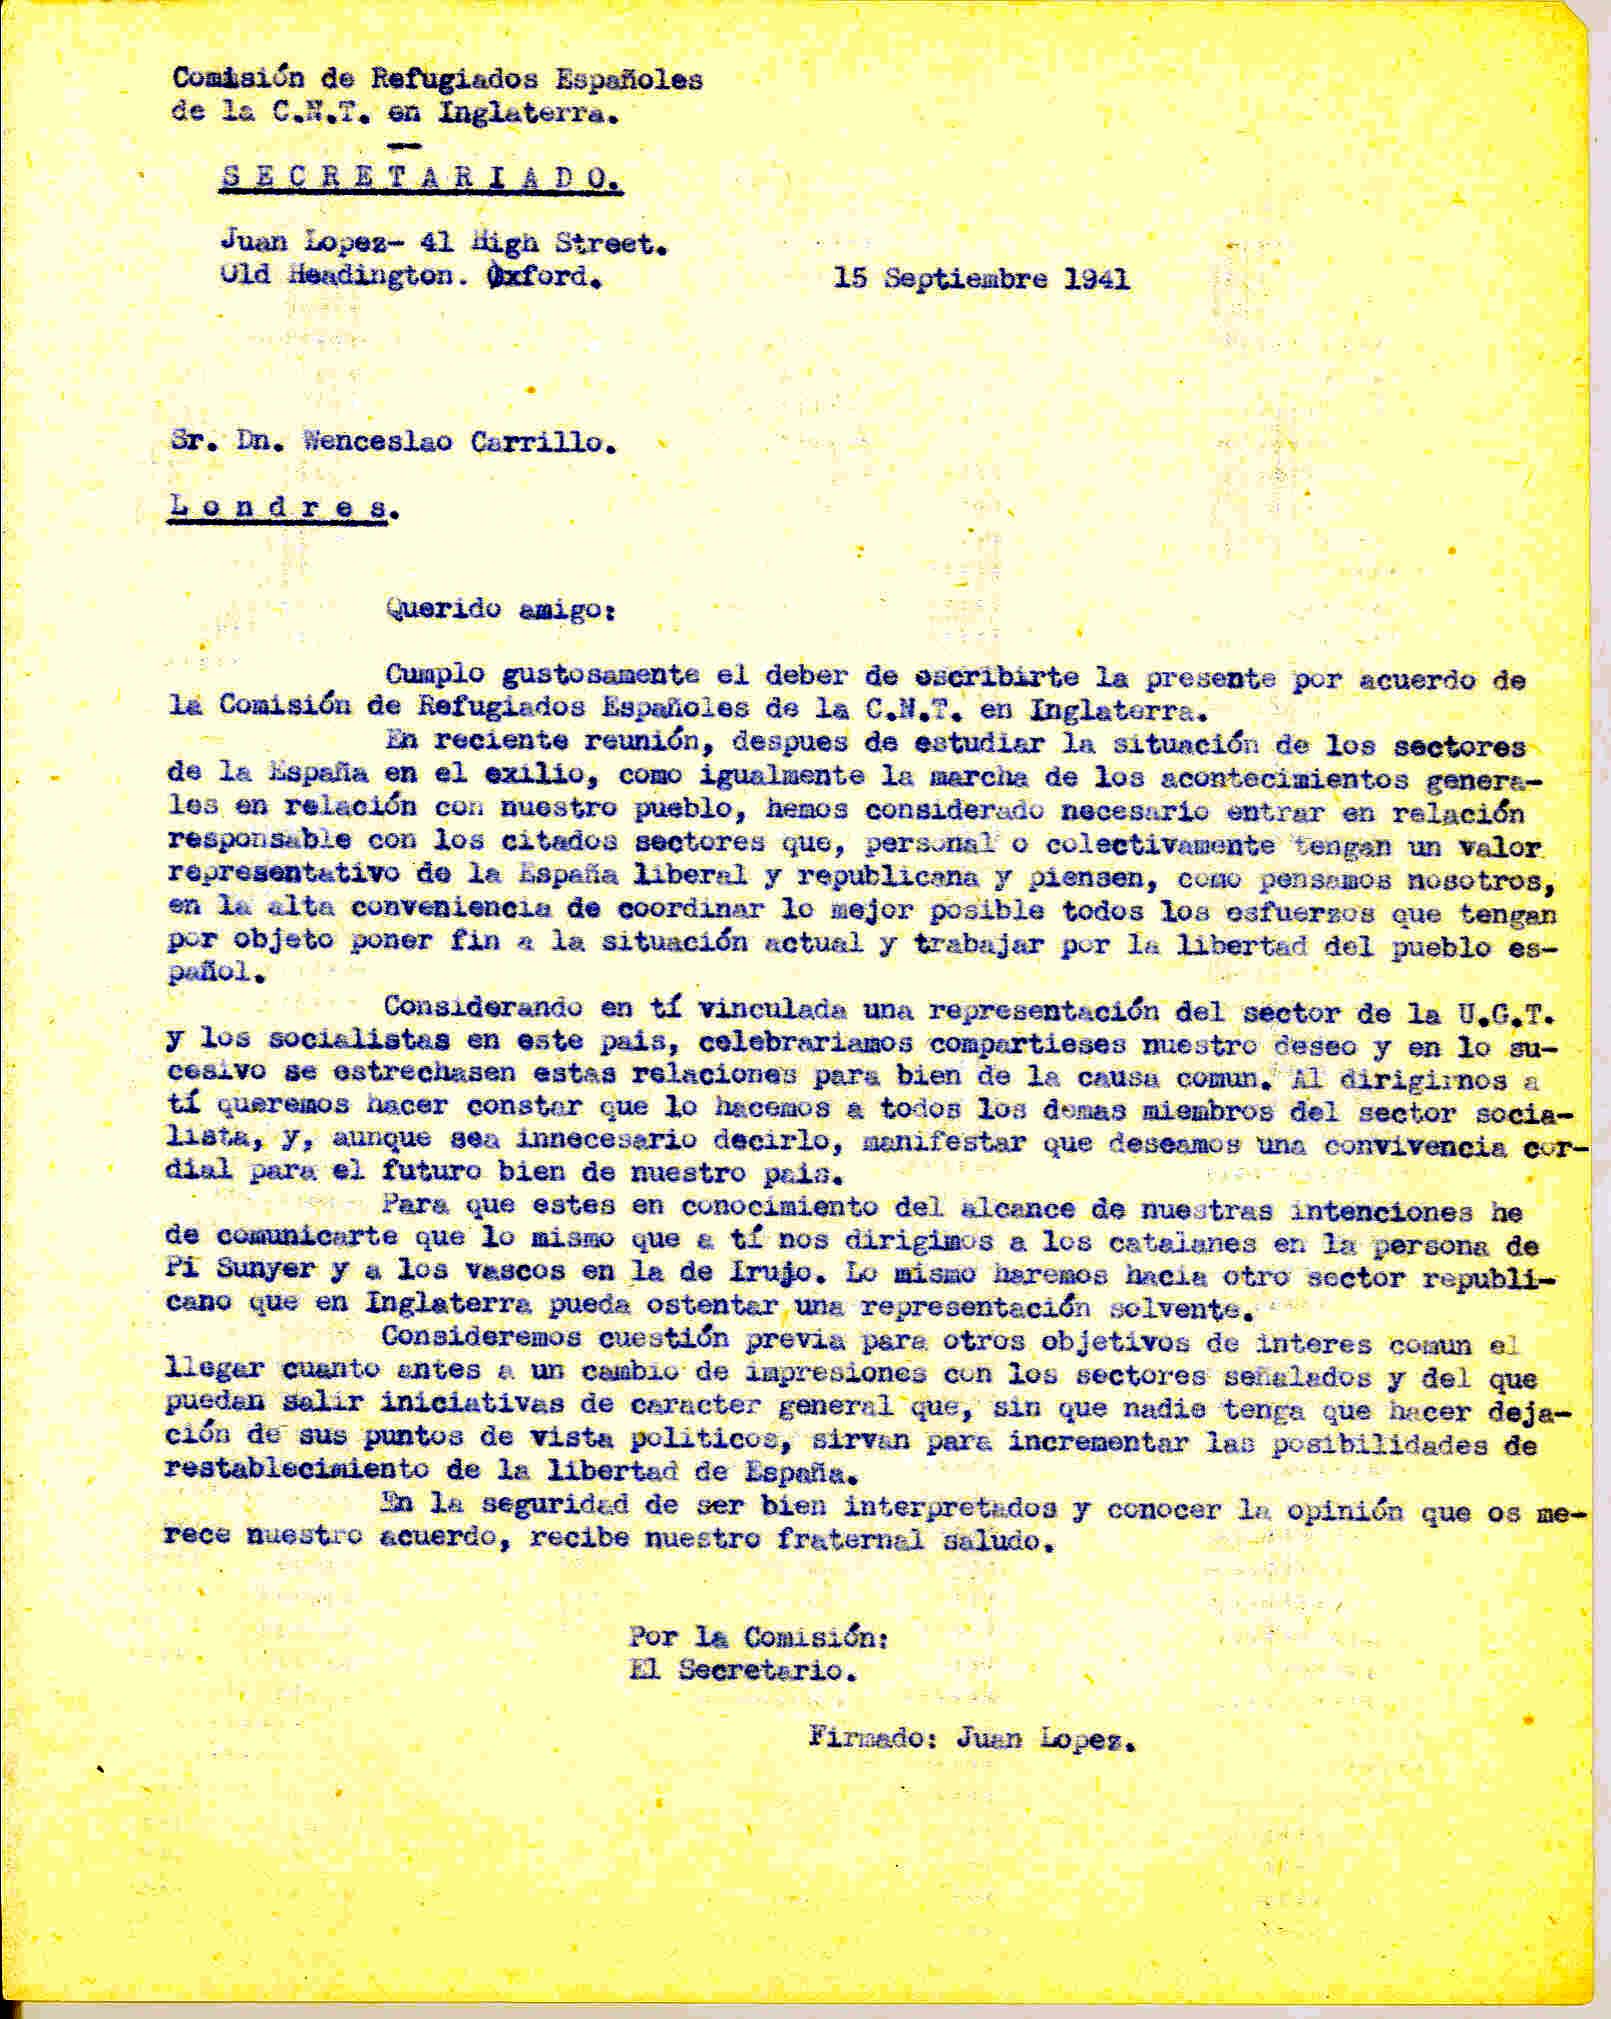 Carta a Wenceslao Carrillo como representante de la UGT y de los socialistas para establecer relaciones por el bien del futuro de España.